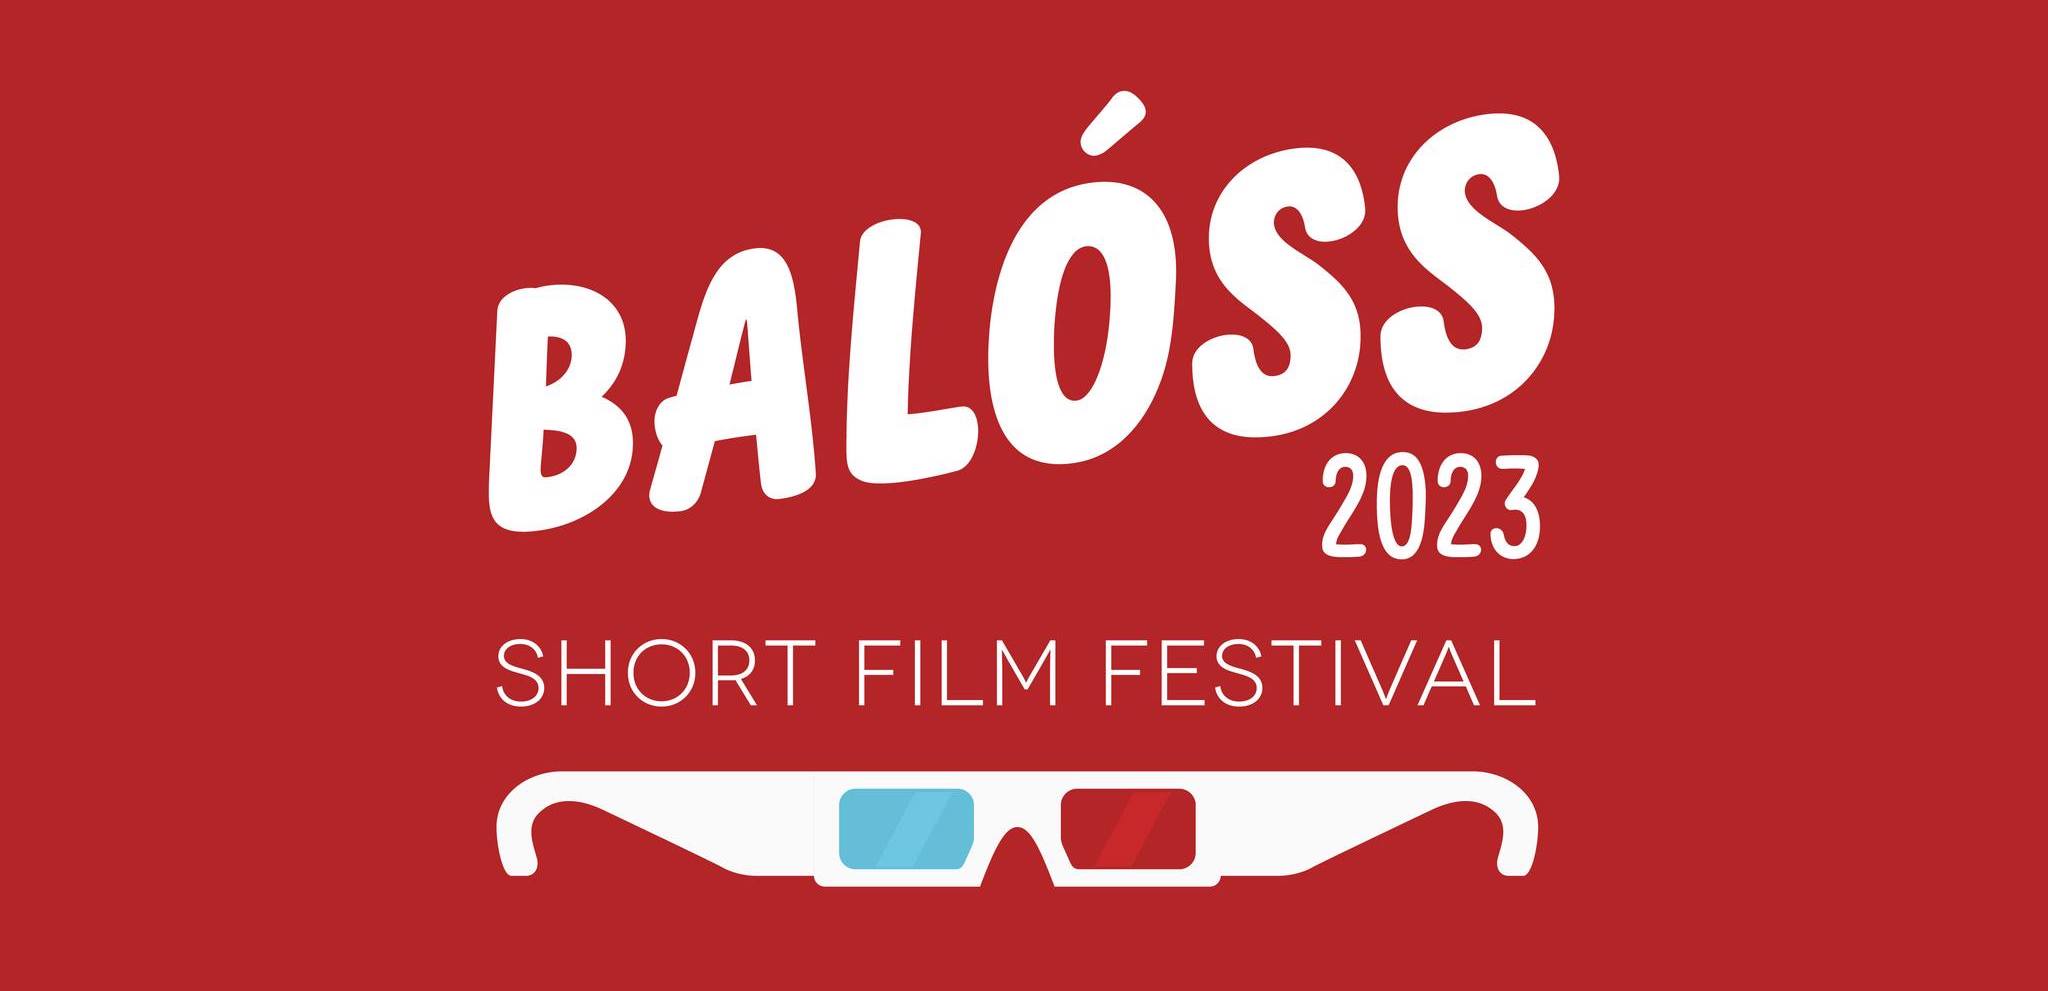 Το Παιδικό και Εφηβικό Διεθνές Φεστιβάλ Κινηματογράφου Αθήνας ταξιδεύει στο Balòss Film Festival στο Μιλάνο!